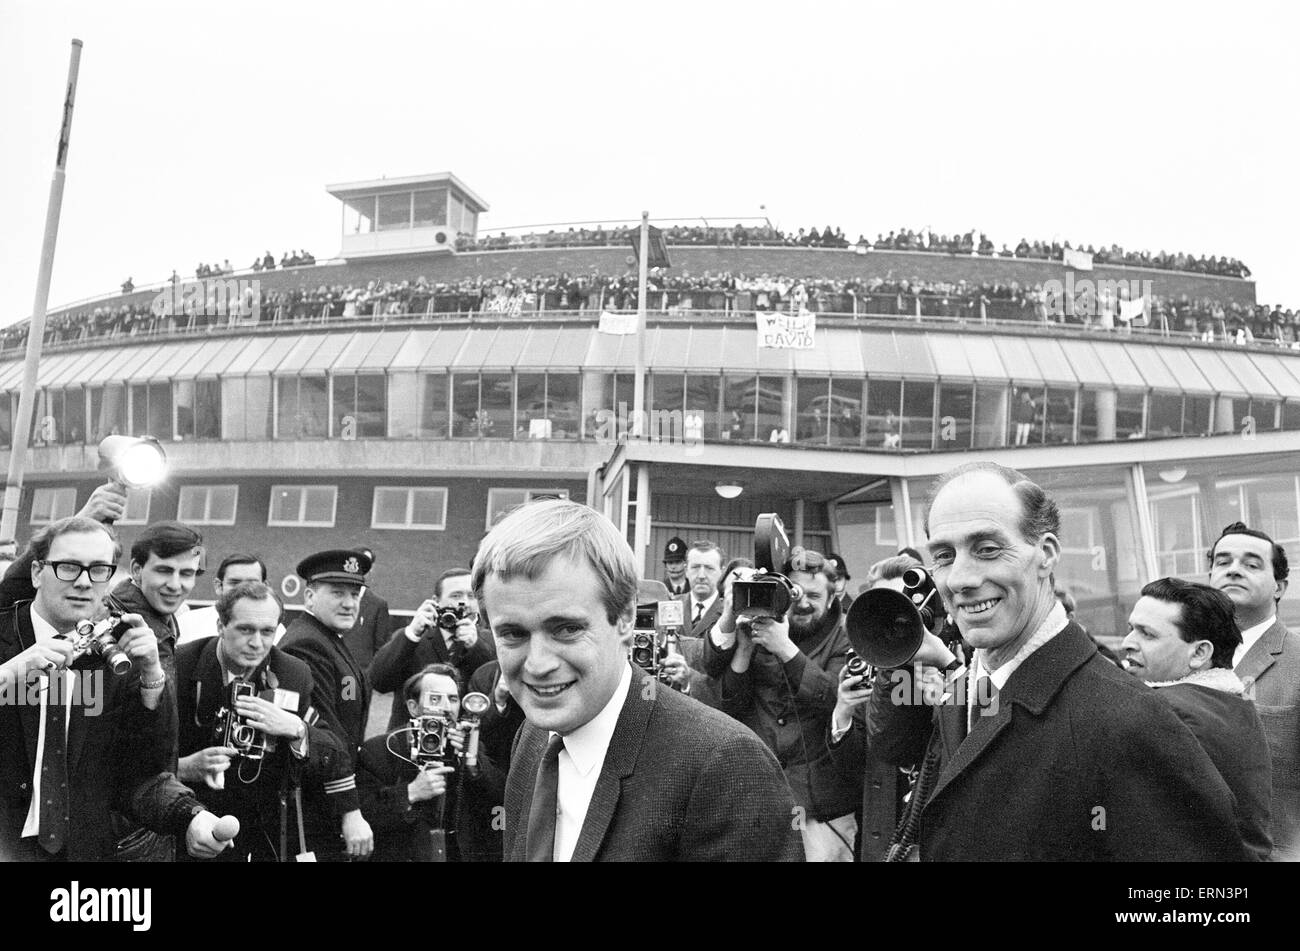 David McCallum, l'acteur qui joue le rôle d'Illya Kuryakin agent secret dans NBC montrent l'homme de l'U.N.C.L.E., que l'on voit en arrivant à l'aéroport Heathrow de Londres, 16 mars 1966. UK Tour de promotion. Banque D'Images